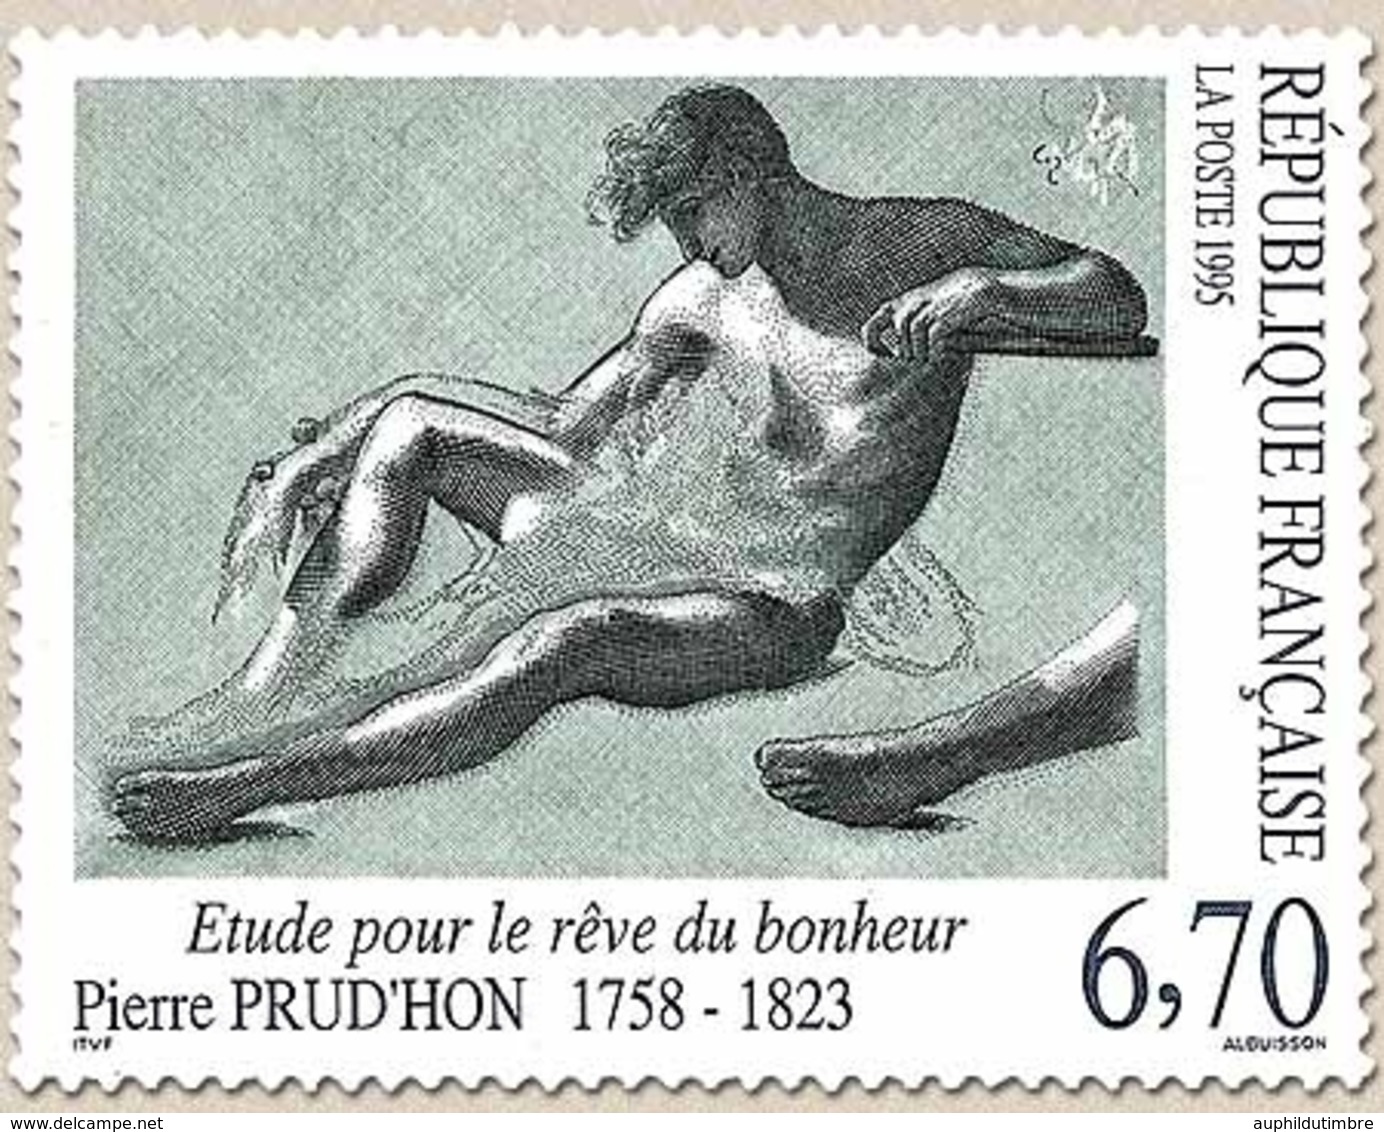 Série Artistique. Etude Pour Le Rêve Du Bonheur. Œuvre De Pierre Prud'hon (1758-1823). 6f.70 Y2927 - Ongebruikt